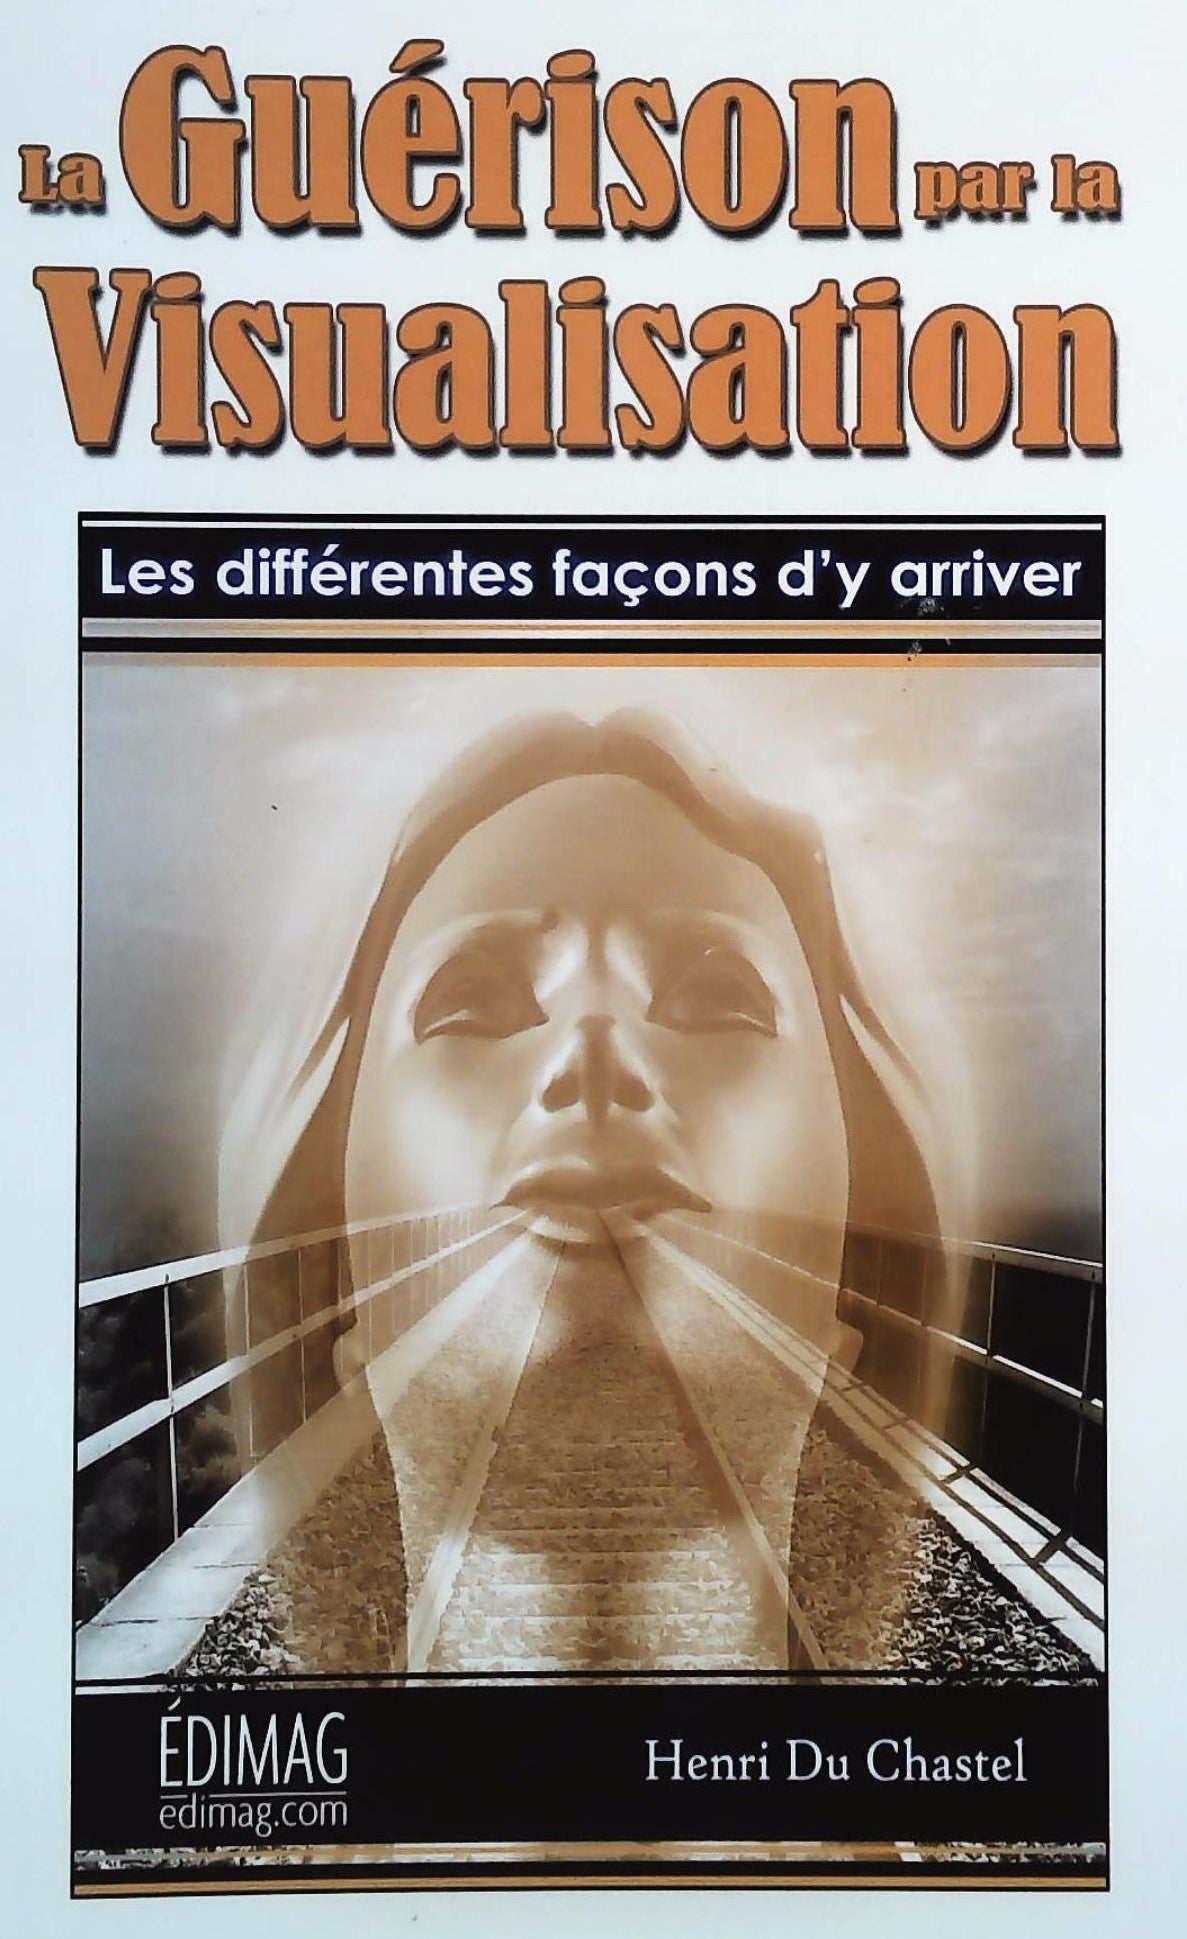 Livre ISBN 2895423504 La guérison par la visualisation (Henri Du Chastel)